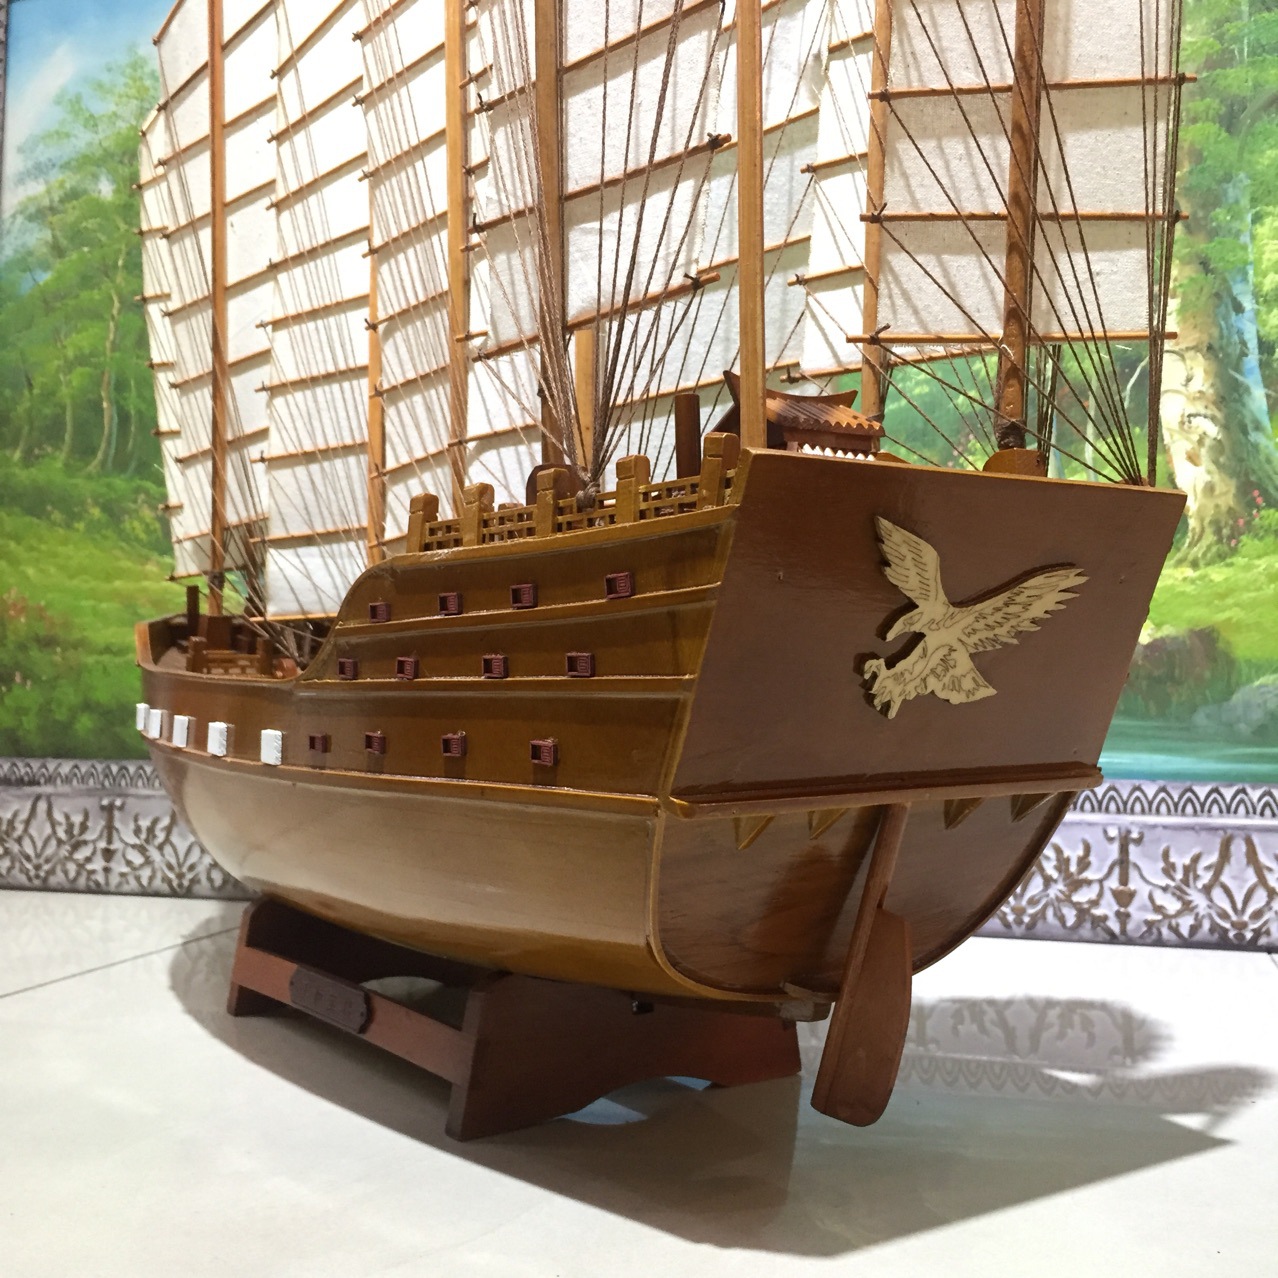 实木郑和宝船纯手工帆船模型中式工艺船家居博物馆展品收藏品礼品